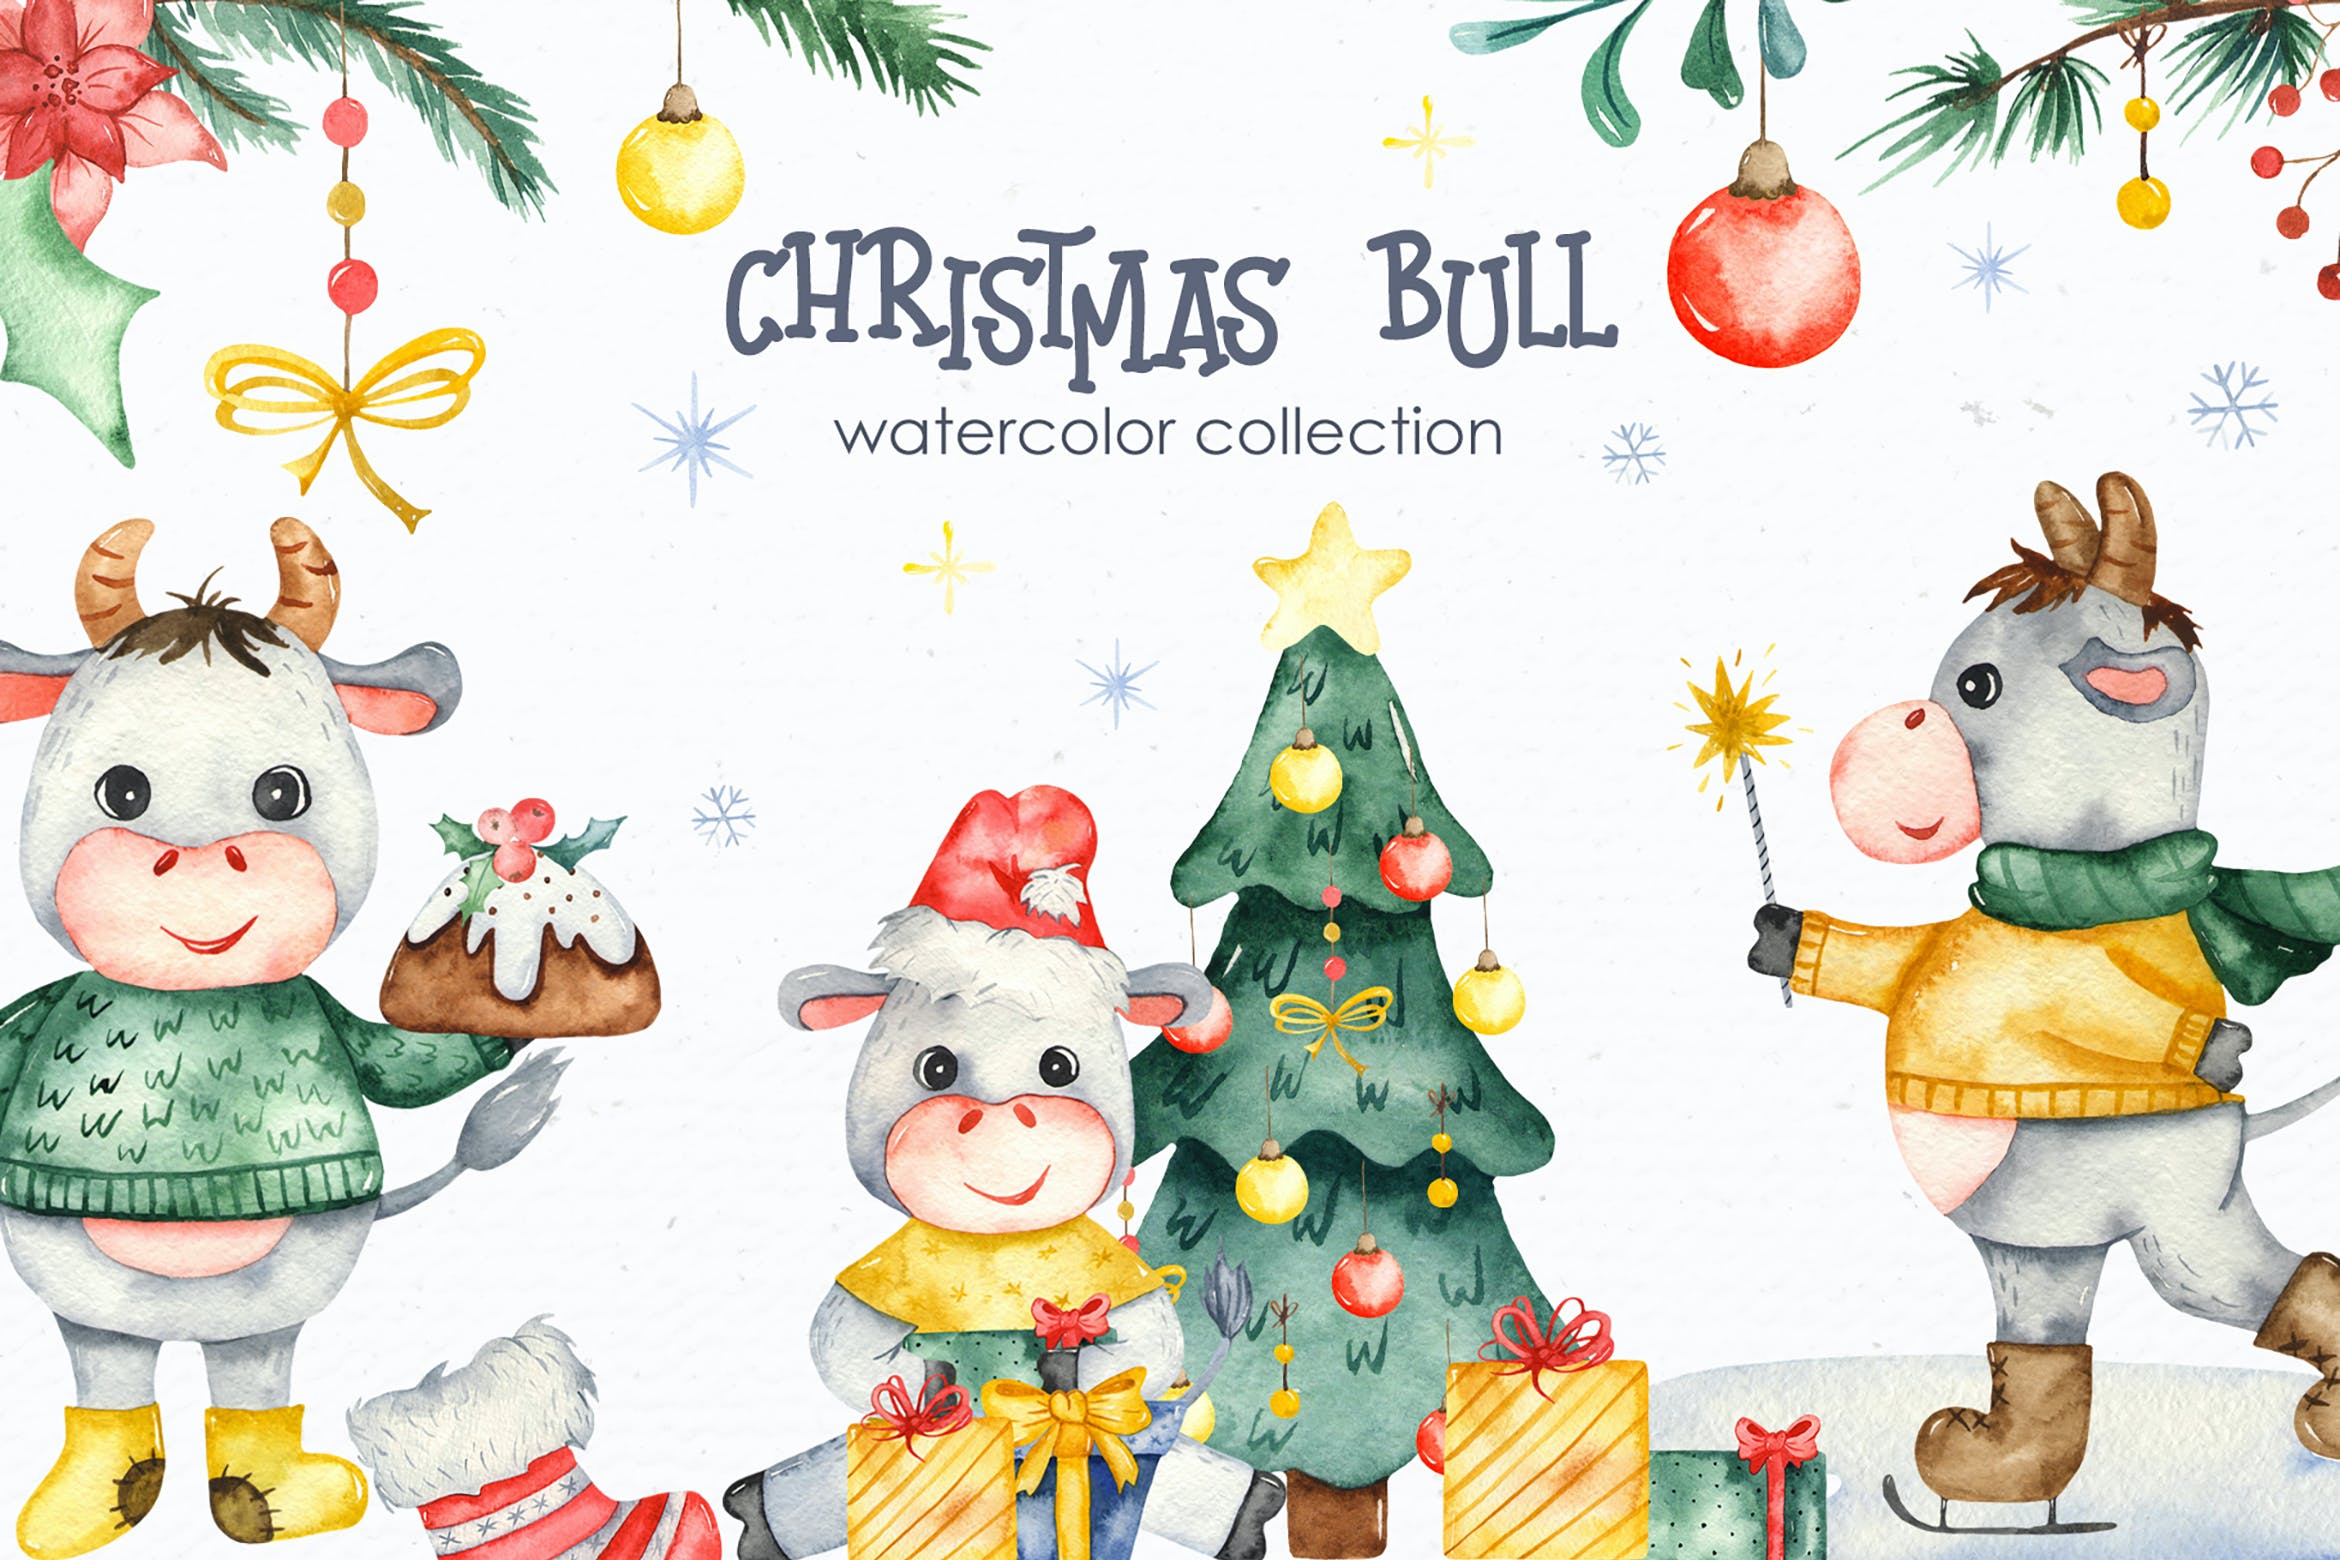 圣诞节水彩剪贴画素材 Watercolor Christmas bulls设计素材模板